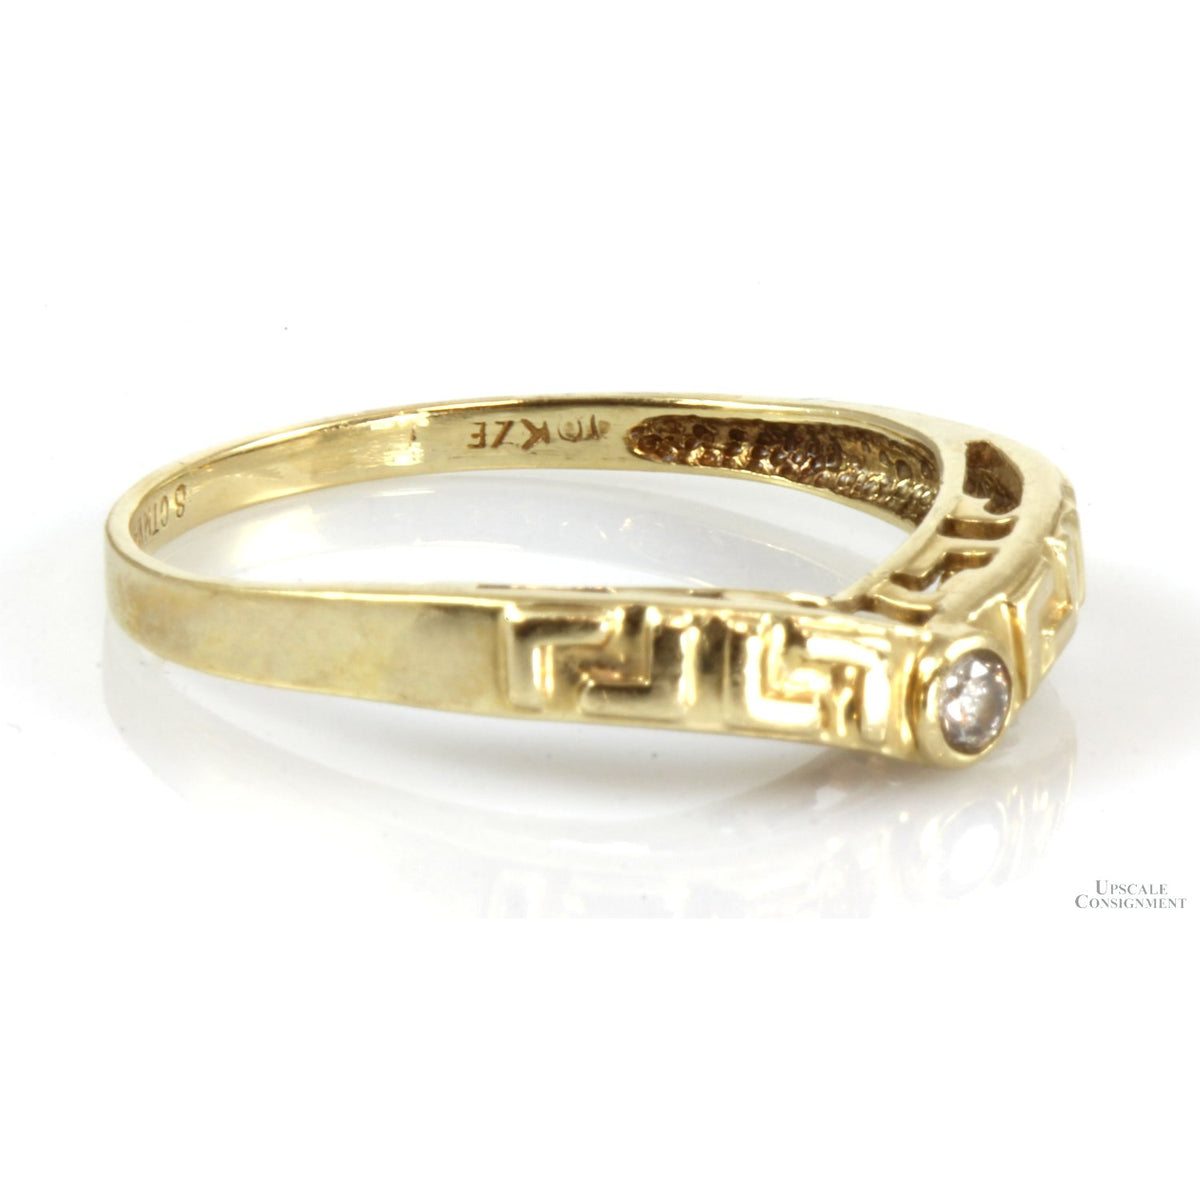 .06ct Diamond V-Shape Design 14K Gold Ring